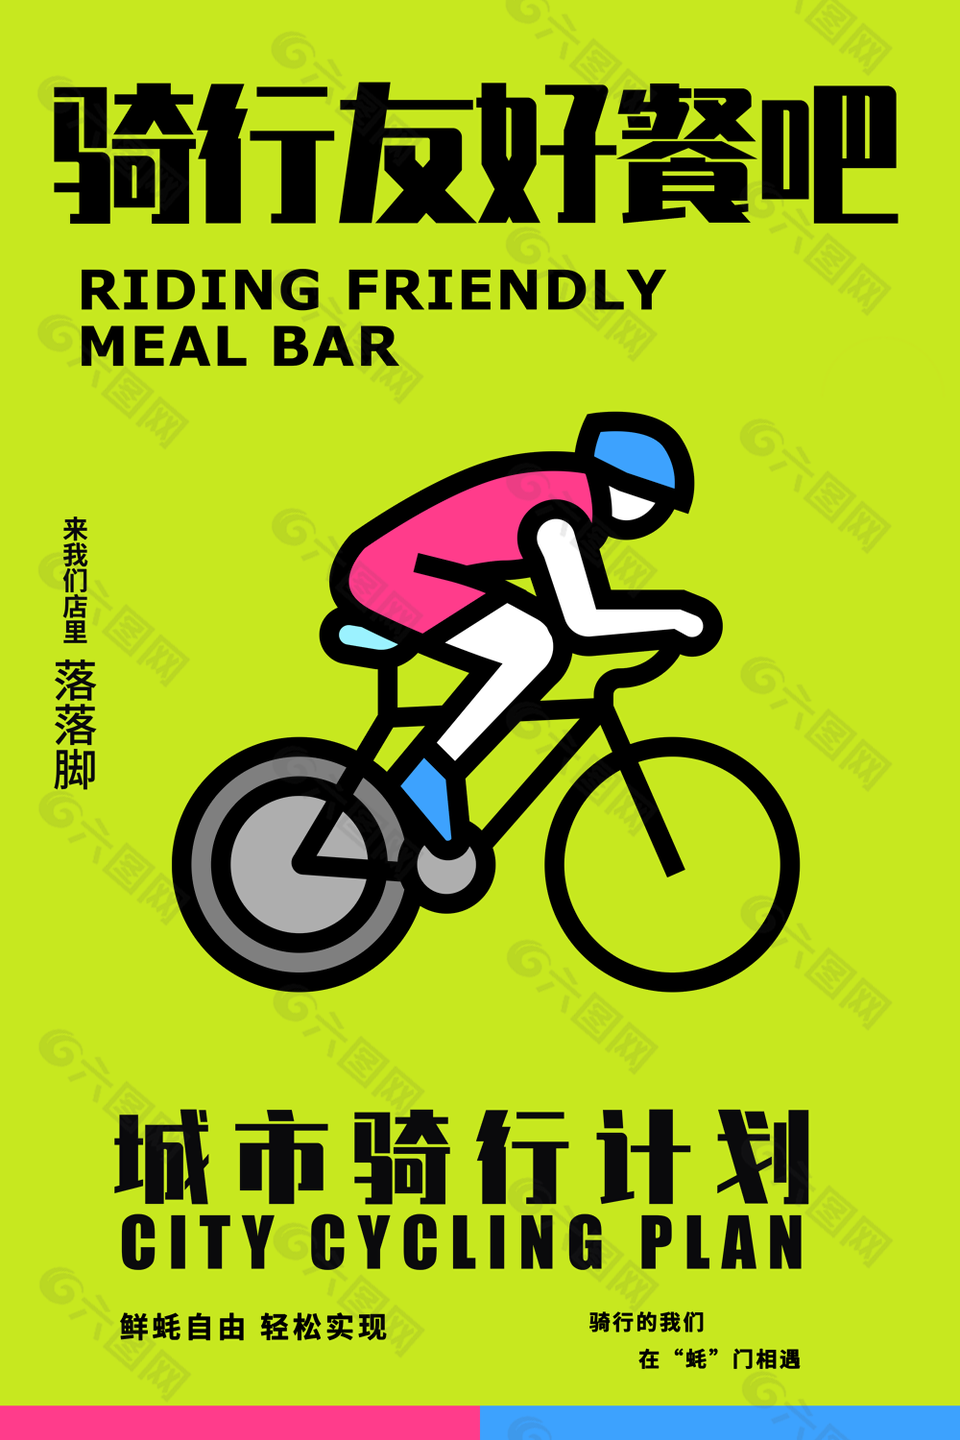 简约草绿文艺手绘骑行友好餐吧海报图设计